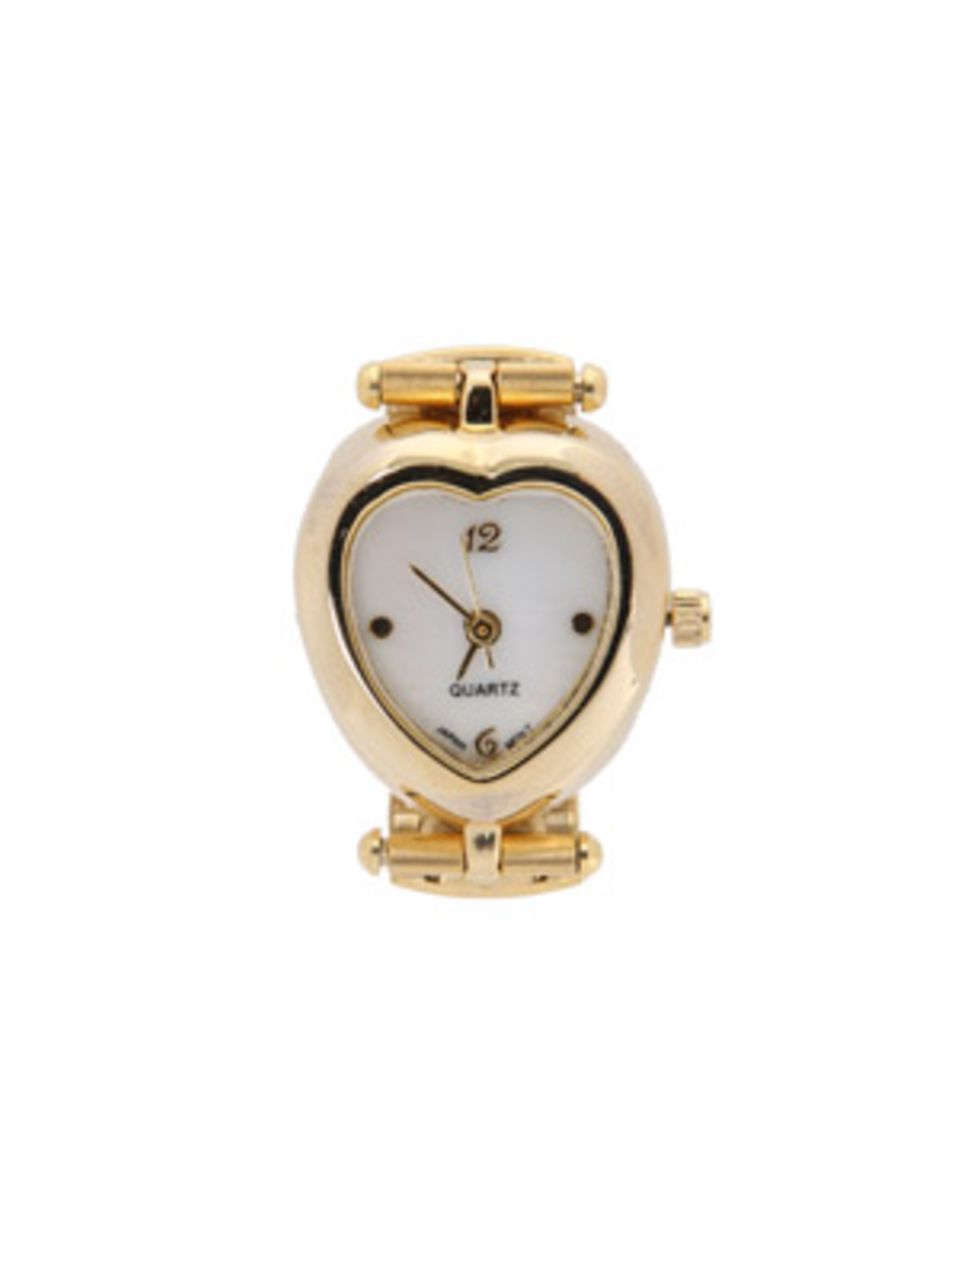 Goldene Uhr mit herzförmig eingefasstem Ziffernblatt von Urban Outfitters, um 25 Euro.